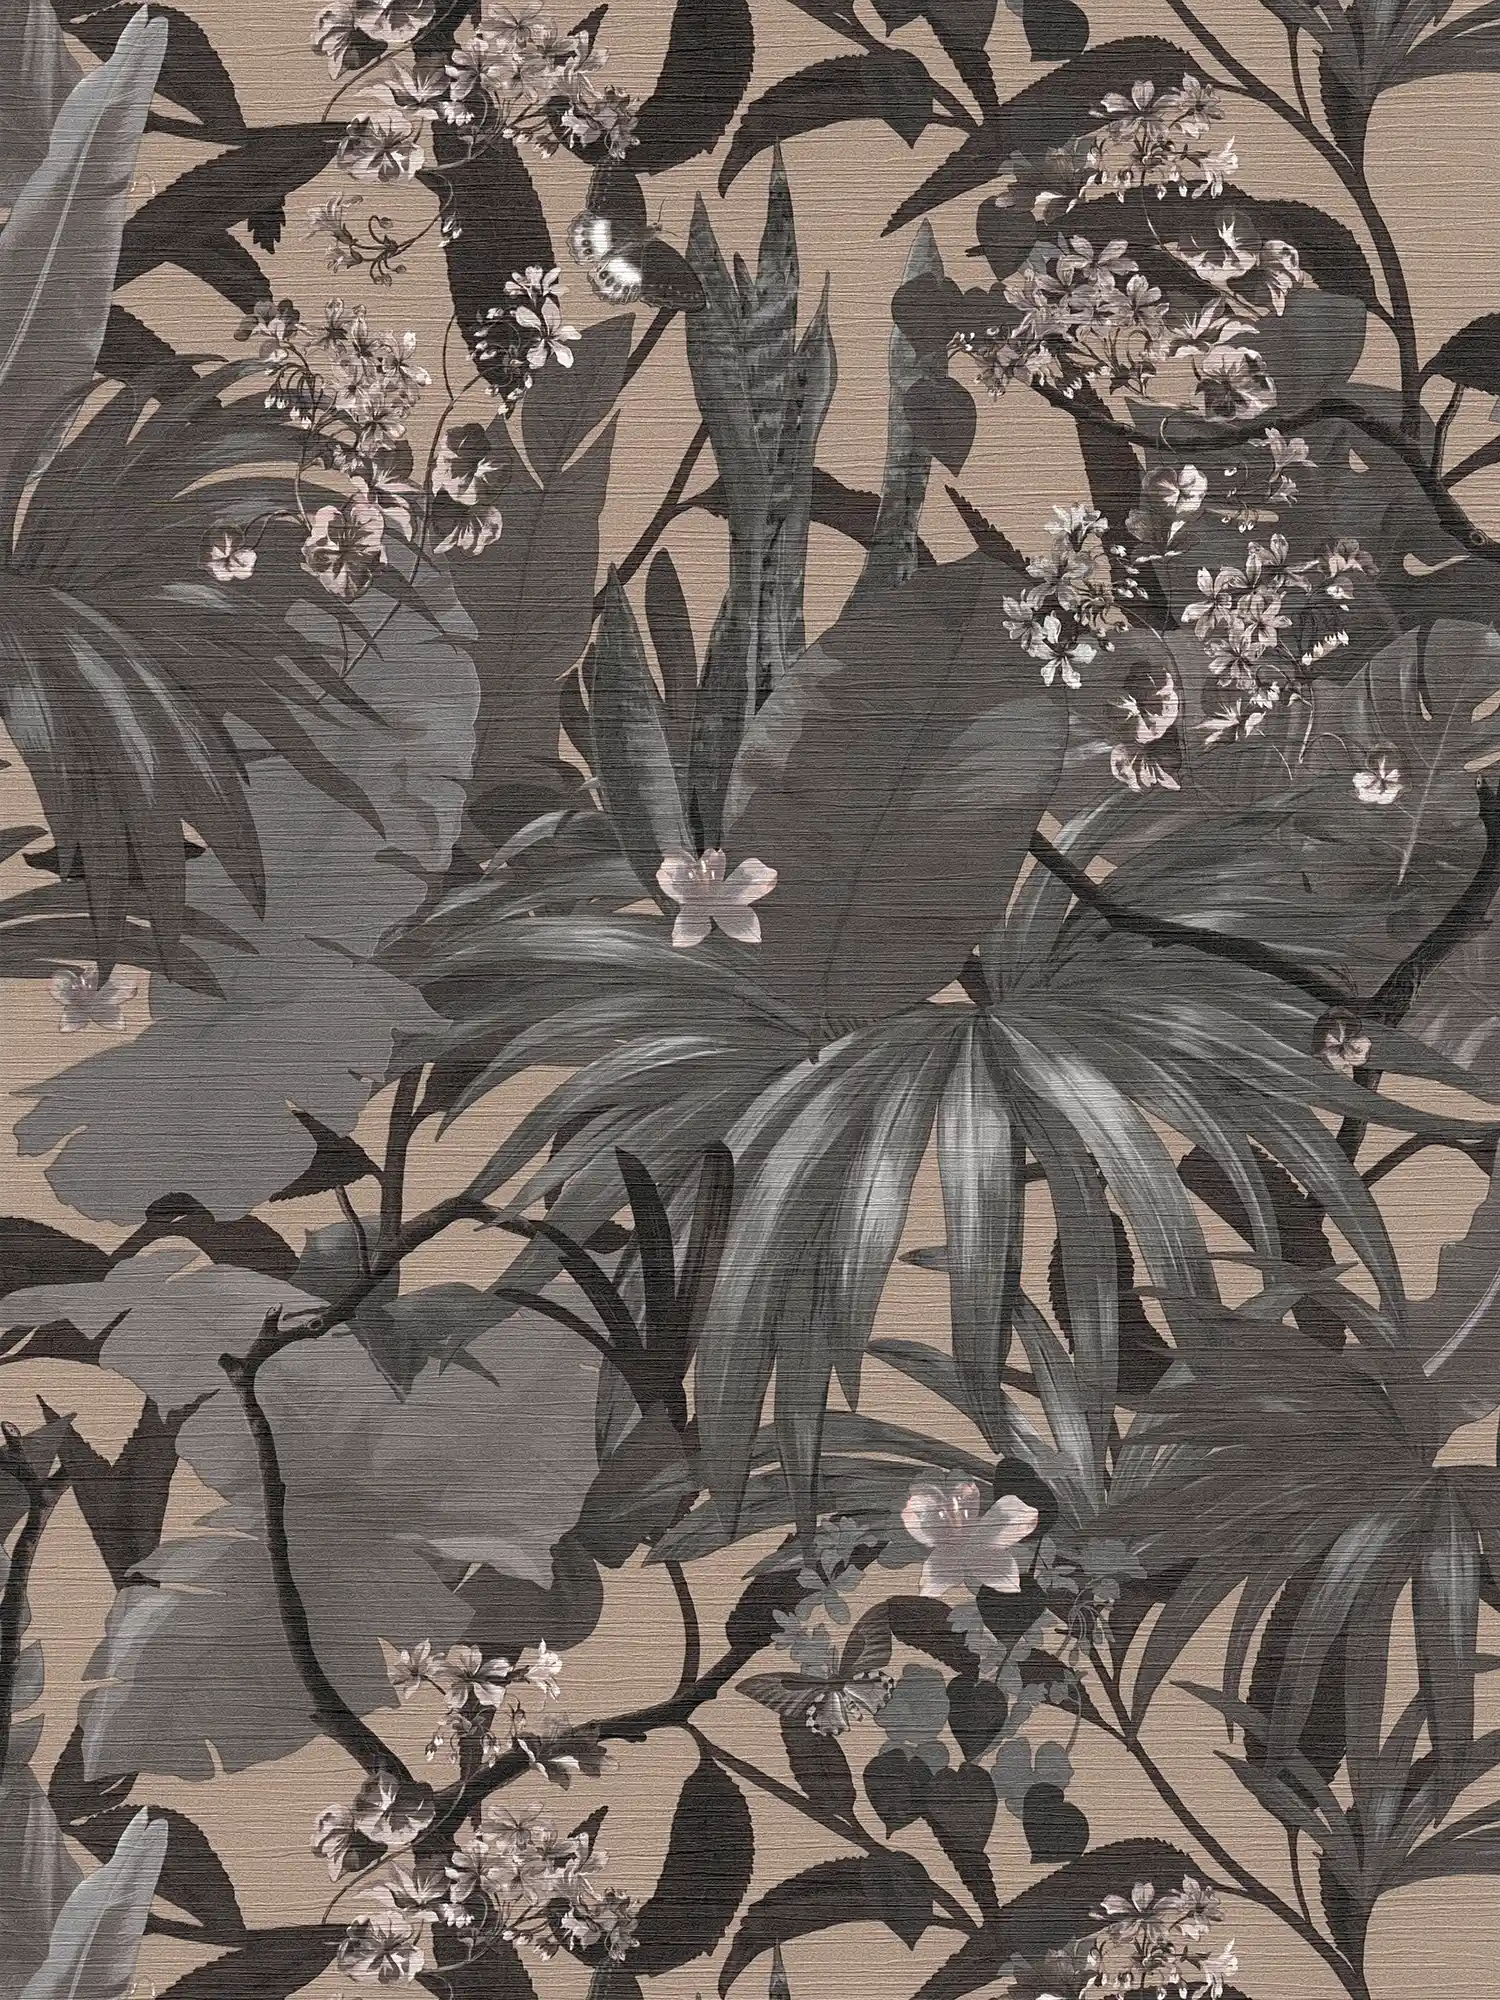 Jungle wallpaper leaf pattern - grey, beige
